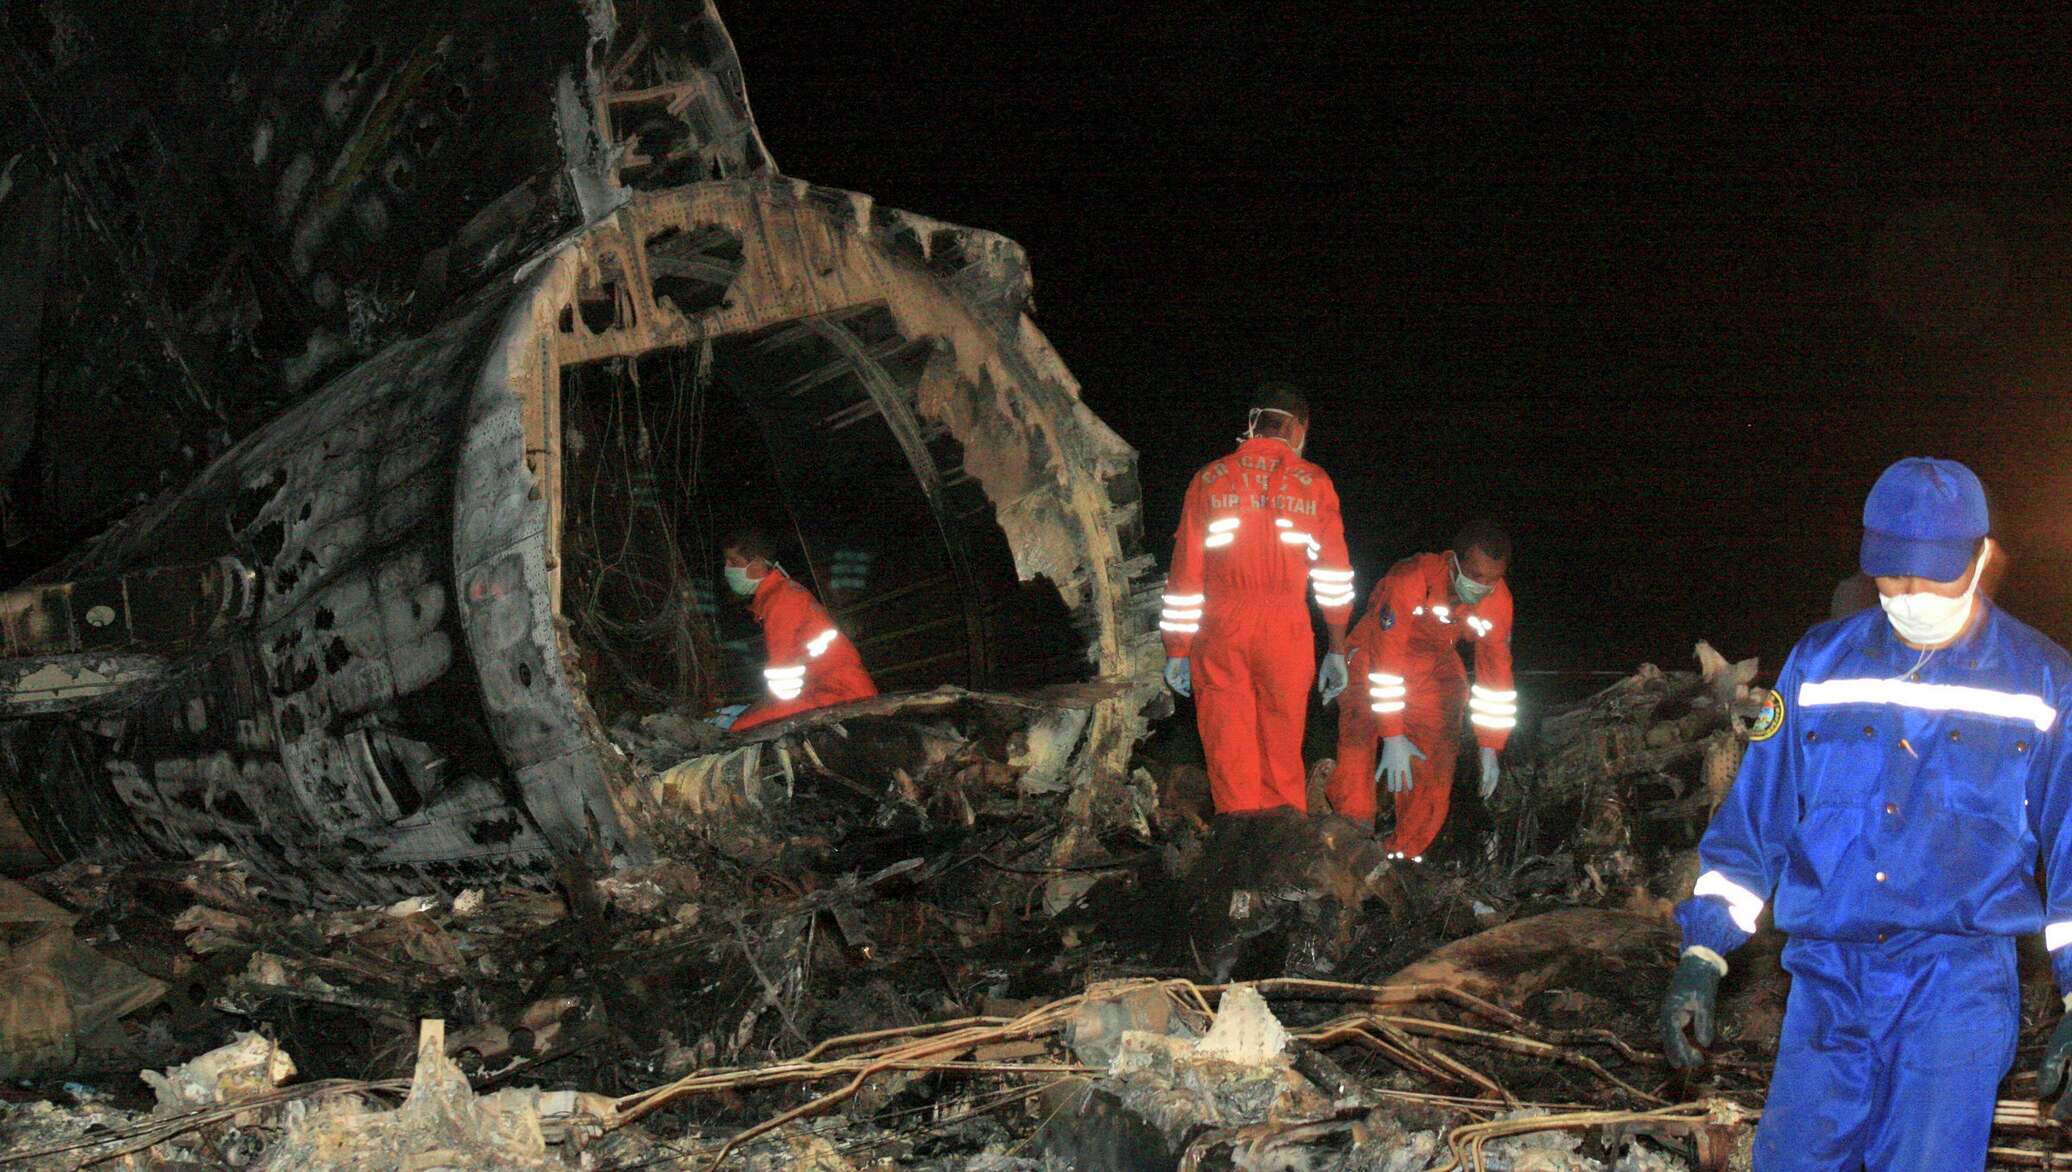 14 сентября 2008 г. Боинг 737 Пермь катастрофа. Место крушения Boeing 737 в Перми. Катастрофа в Перми 2008 Боинг.